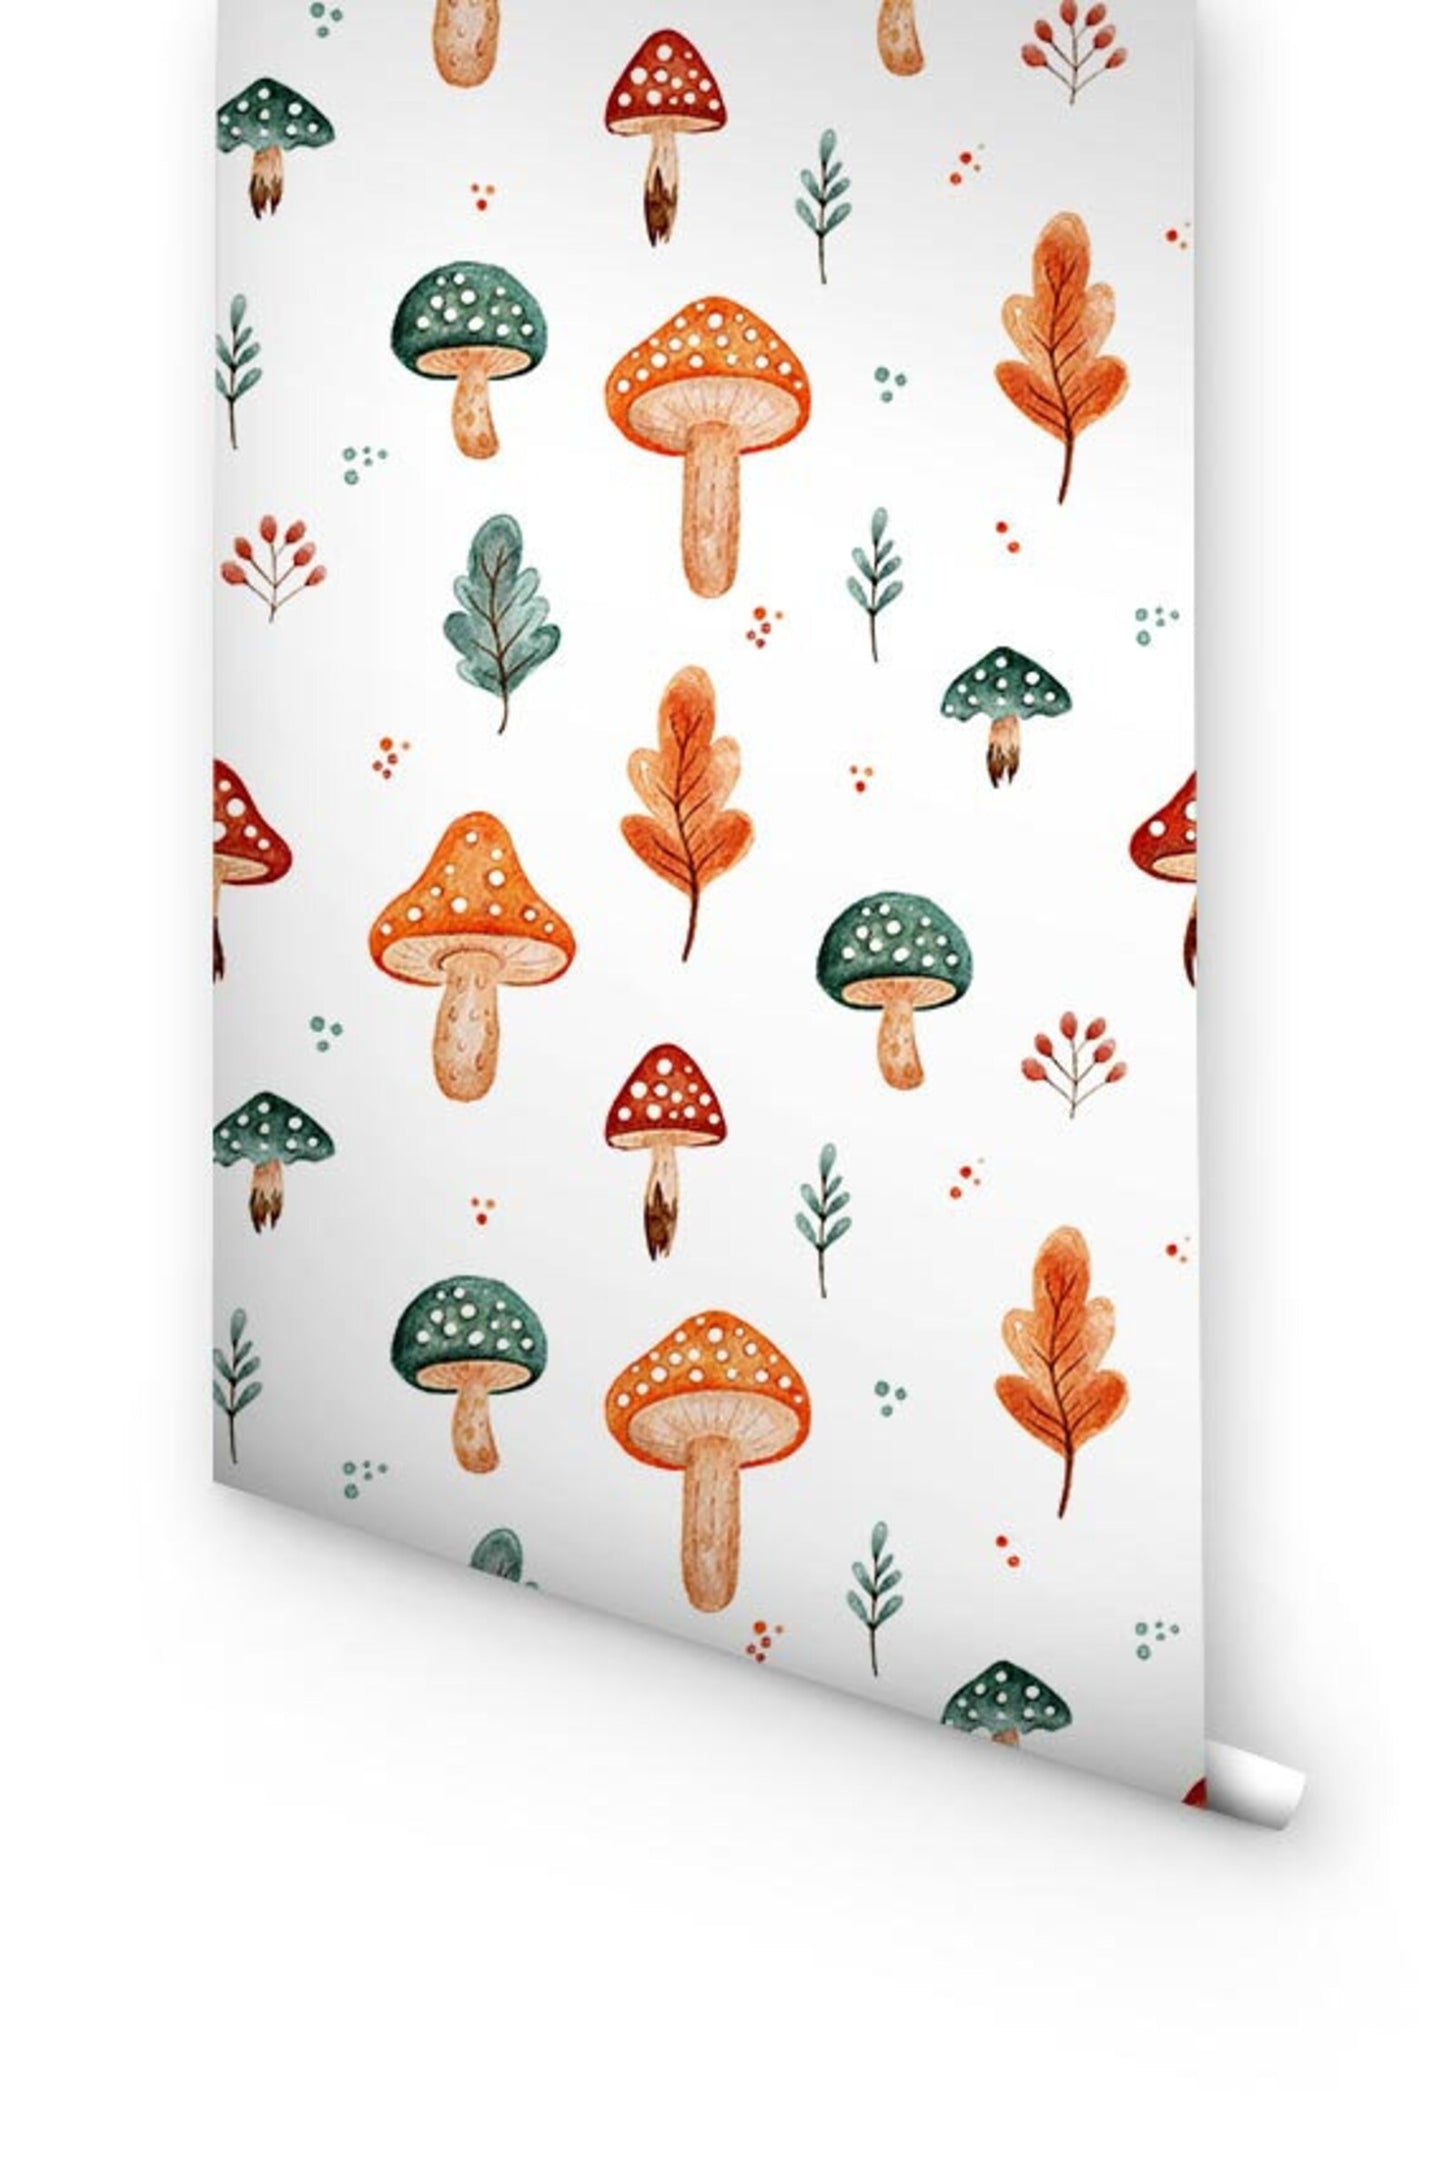 Mushroom wallpaper for nursery